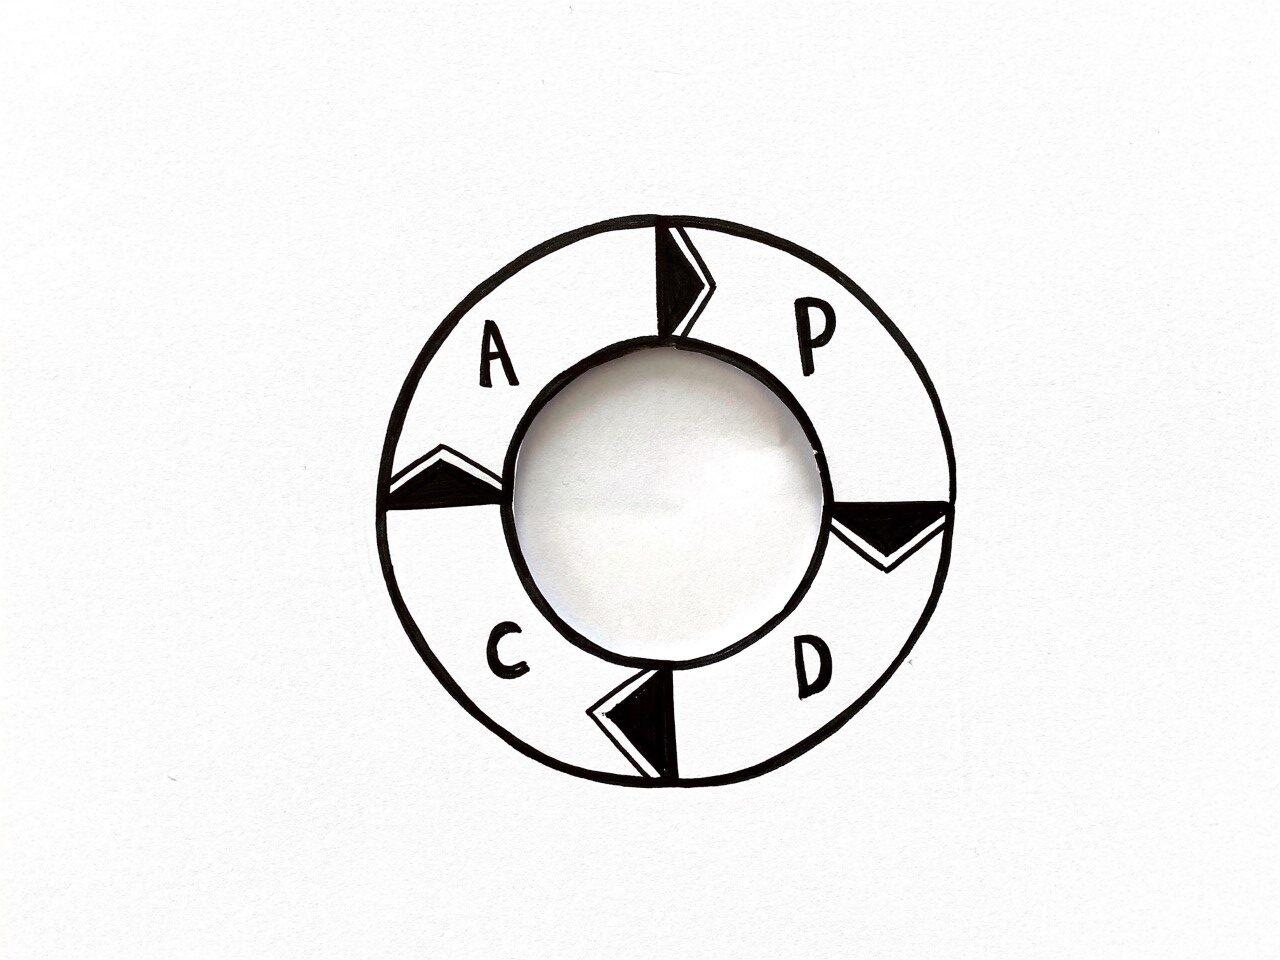 Skizze mit einer Kreis-Grafik mit Pfeilen versehen als Symbol für den PDCA-Zyklus